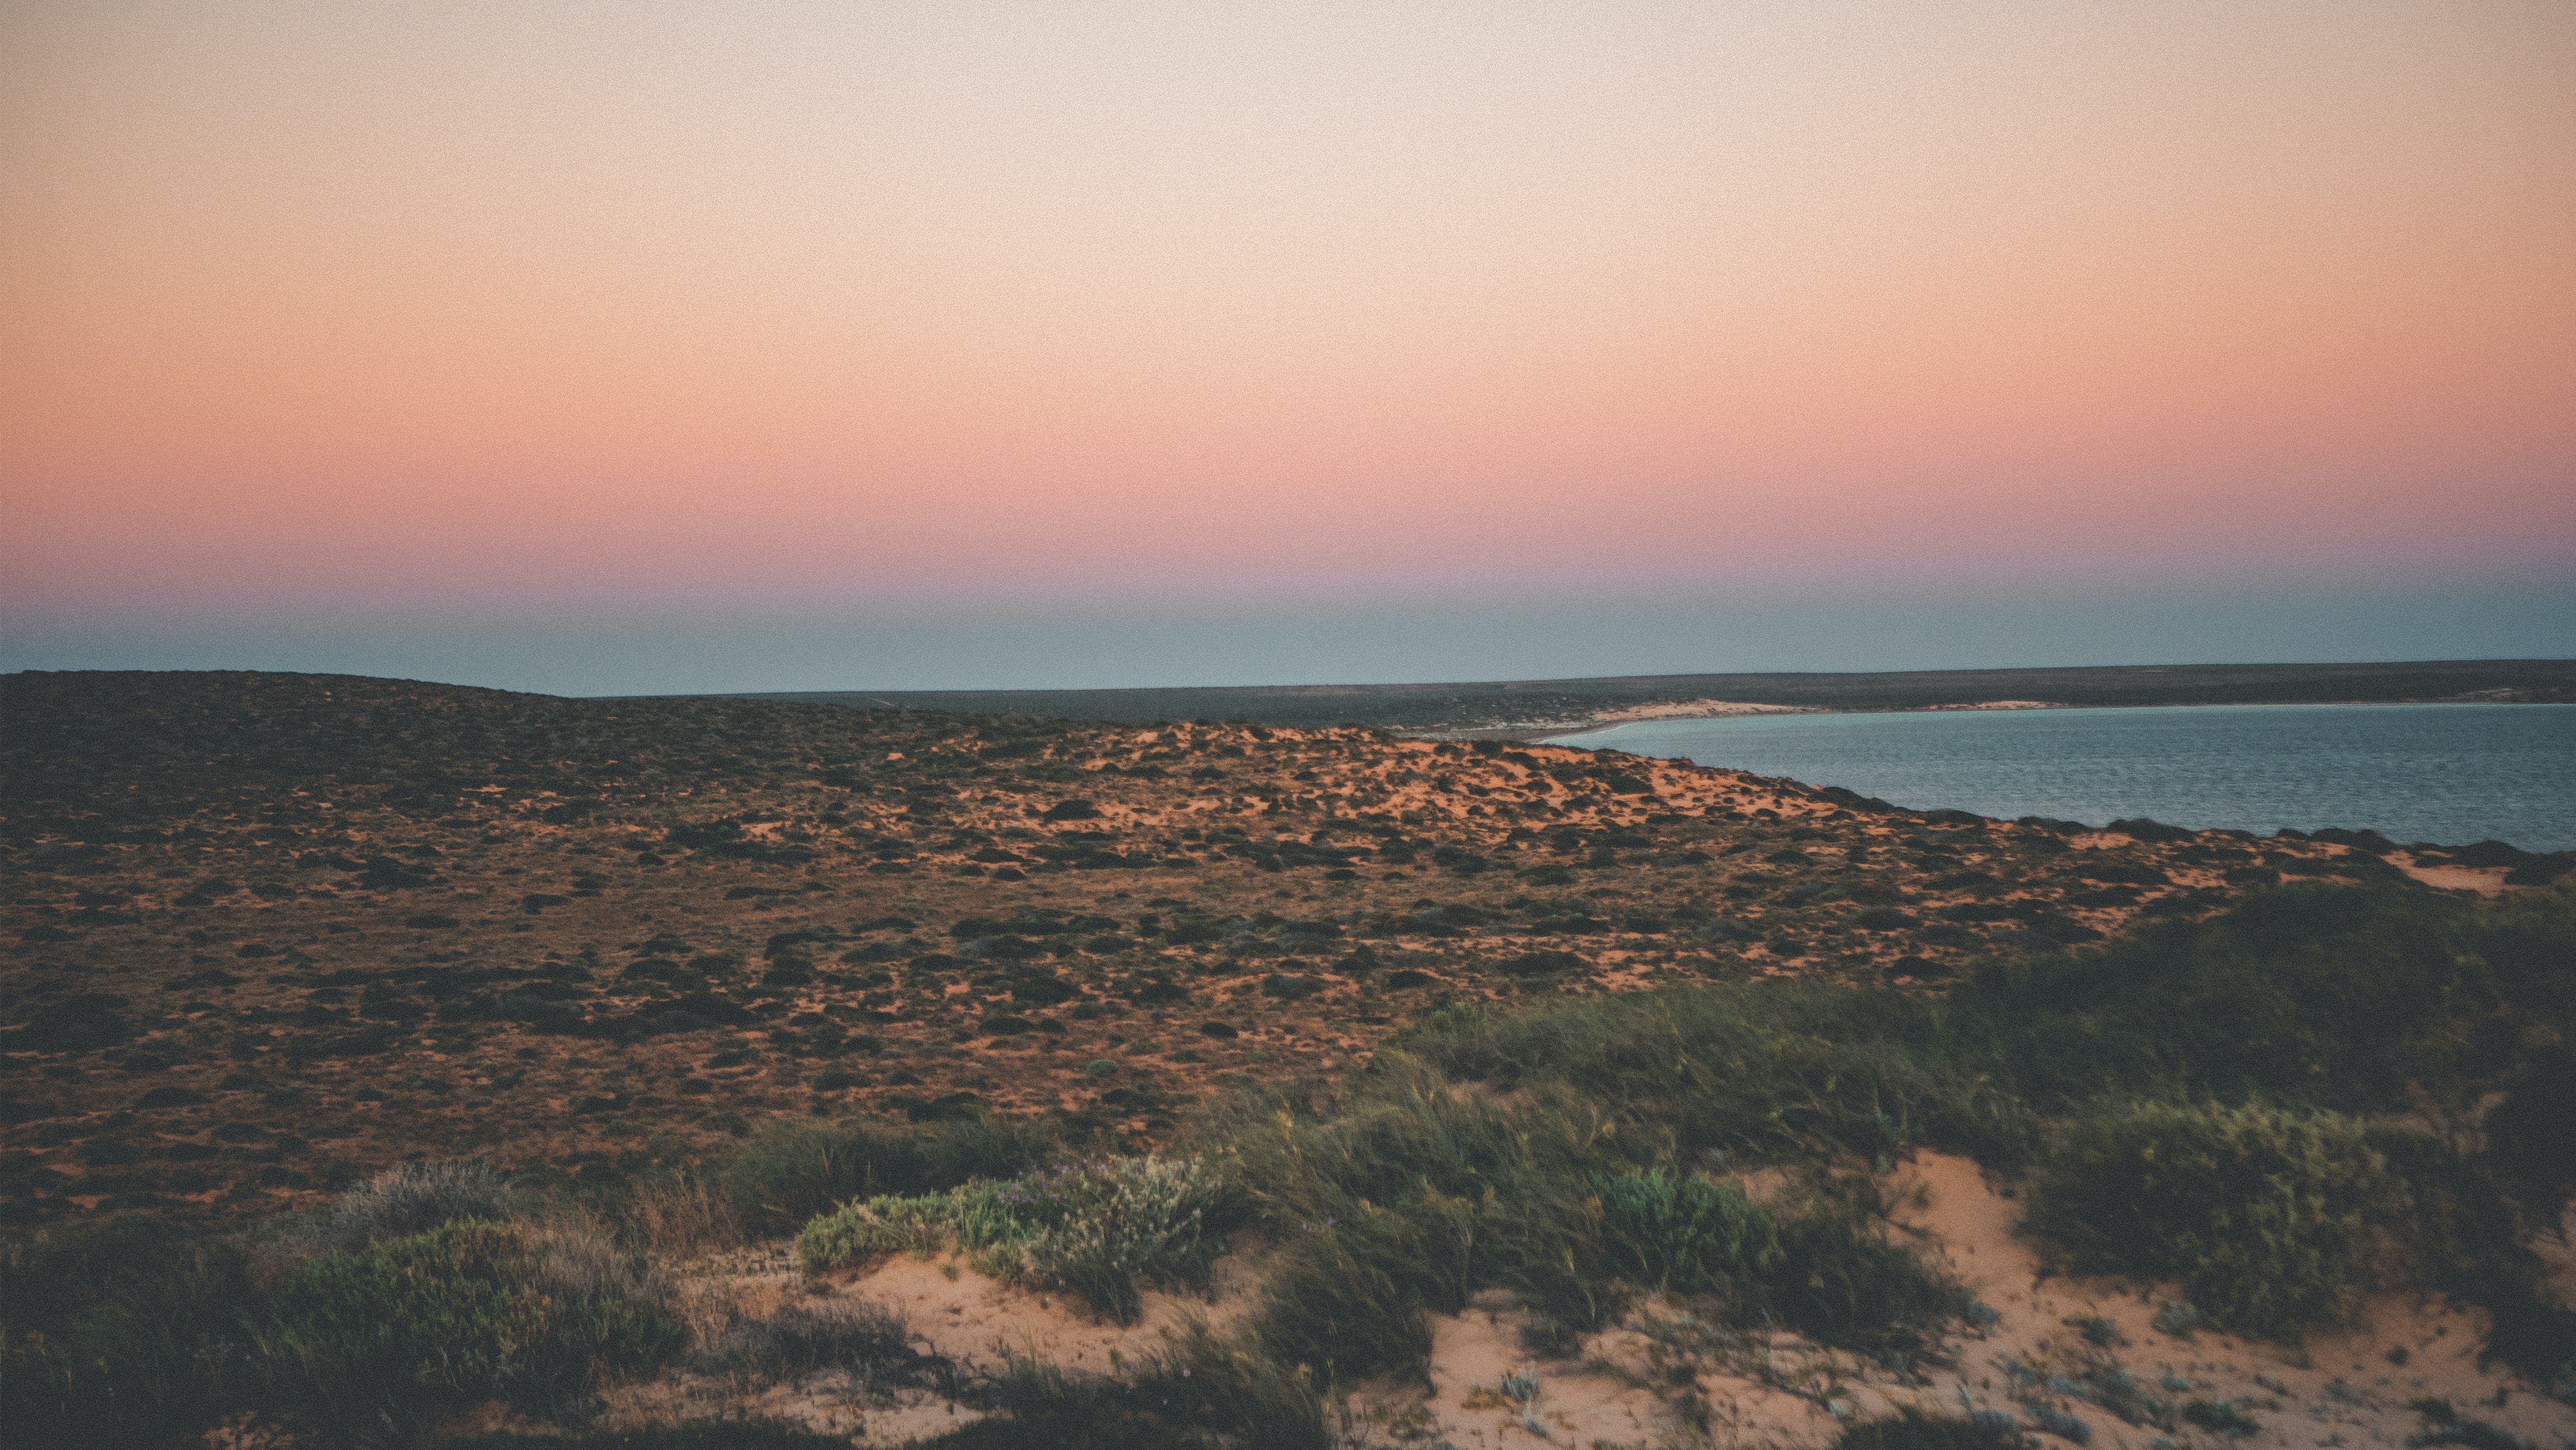 Sonnenuntergang in Shark Bay, West Australien. Man sieht eine raue Küstenlandschaft und eine Bucht mit klarem Wasser.